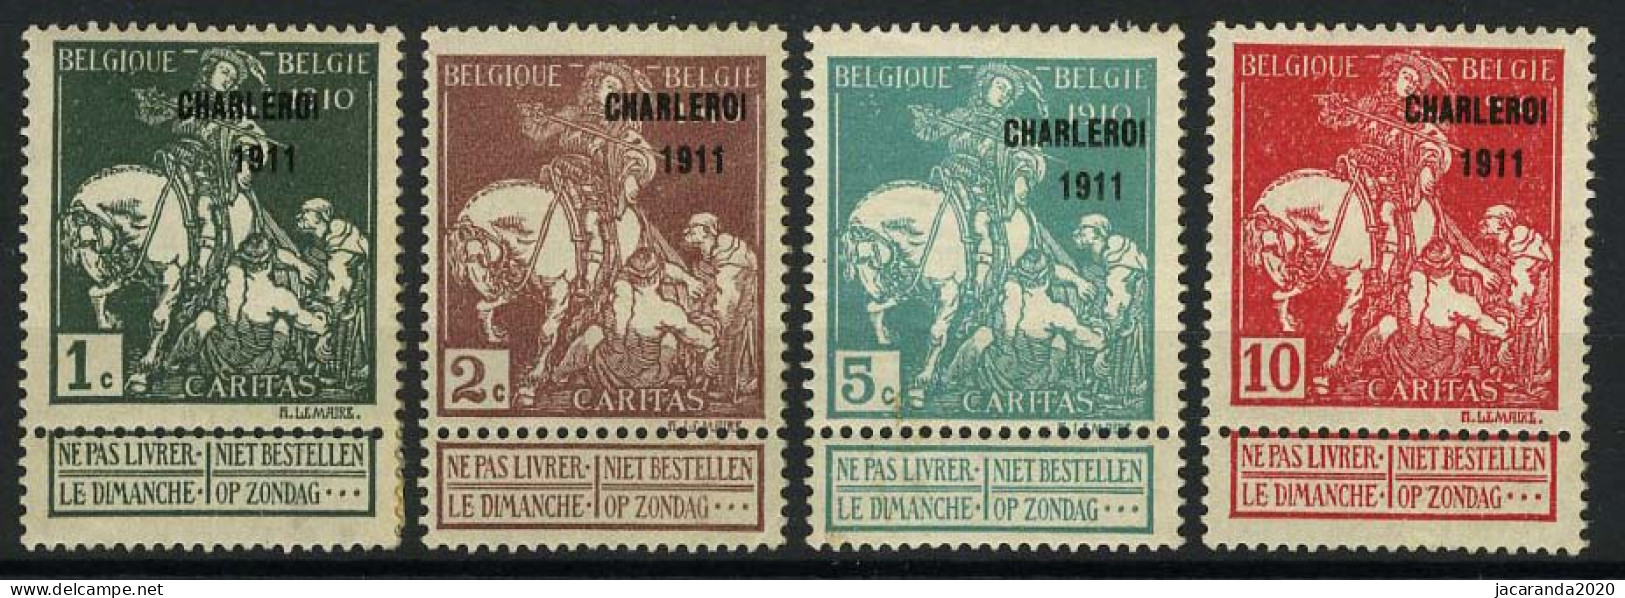 België 101/07 * - Caritas Met Opdruk Charleroi 1911 - Type Lemaire - Effen - Uni - 1910-1911 Caritas